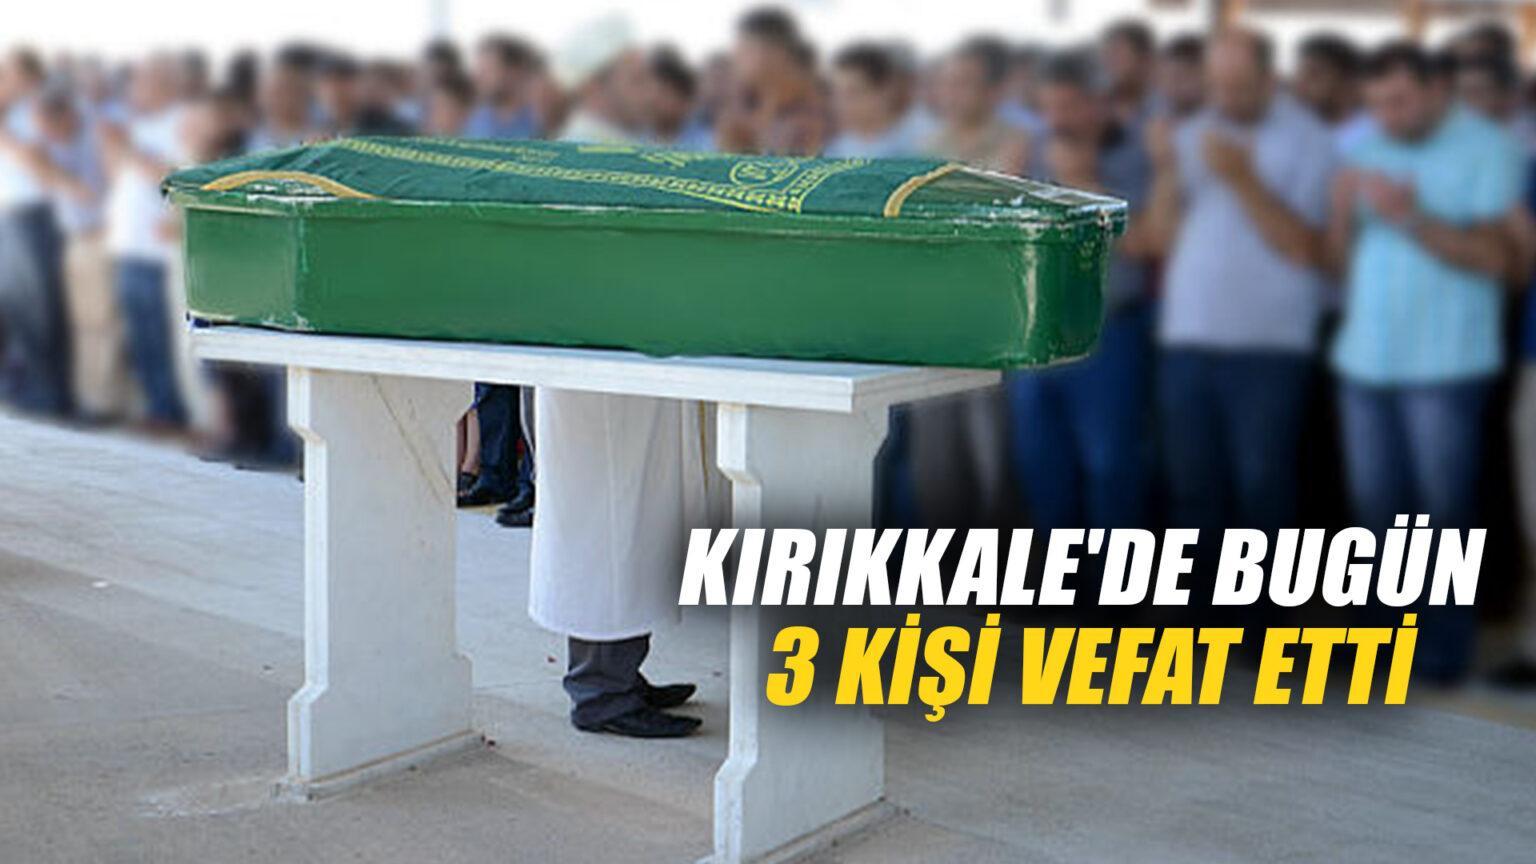 Kırıkkale’de bugün 3 kişi vefat etti